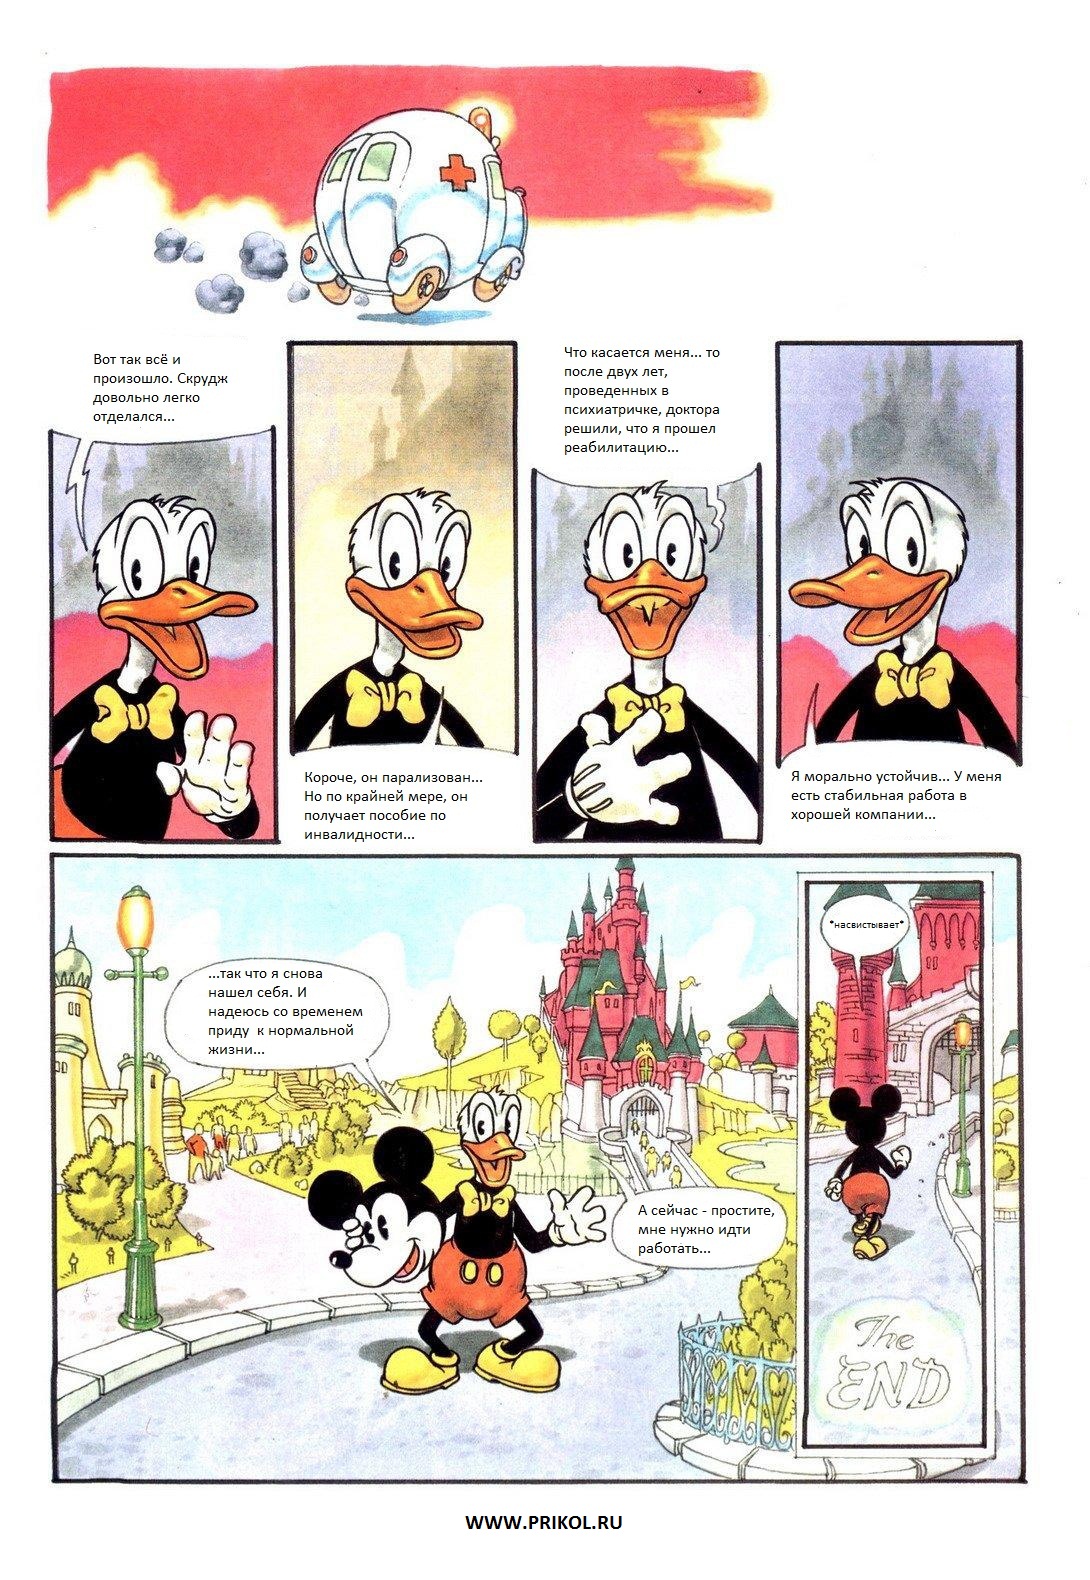 duck-tales-comics-09